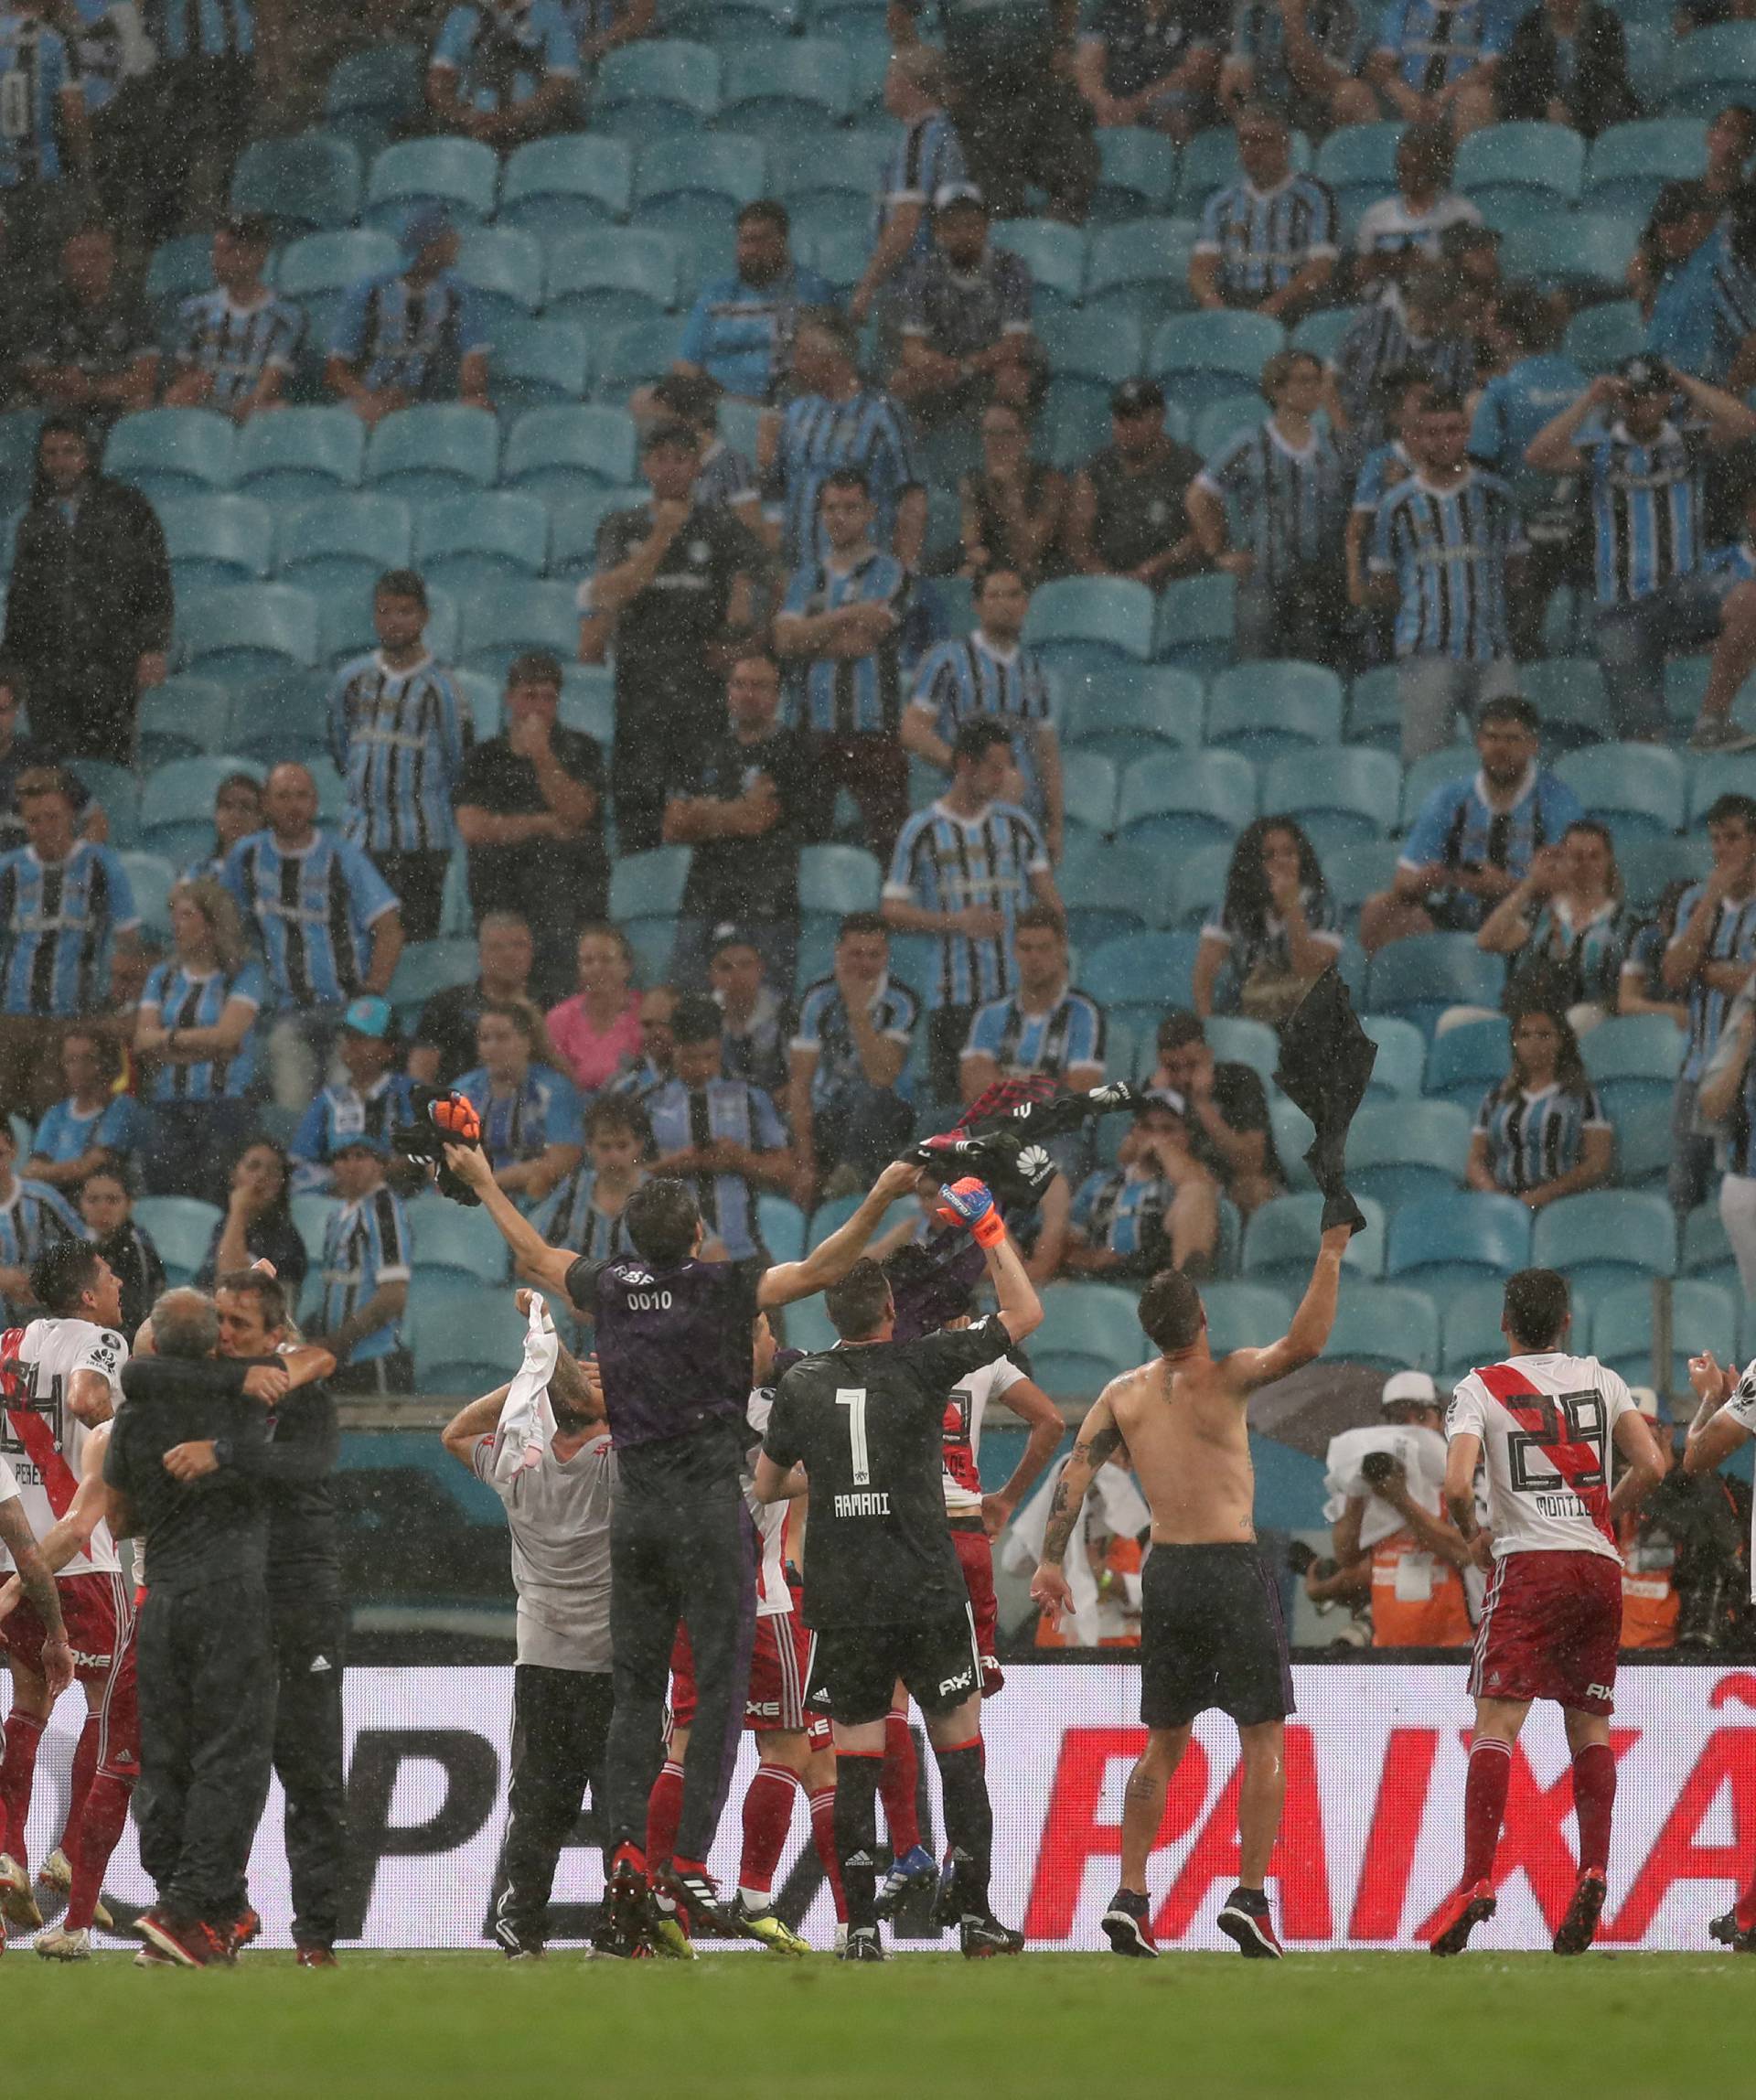 Copa Libertadores - Brazil's Gremio v Argentina's River Plate - Semi Final Second Leg